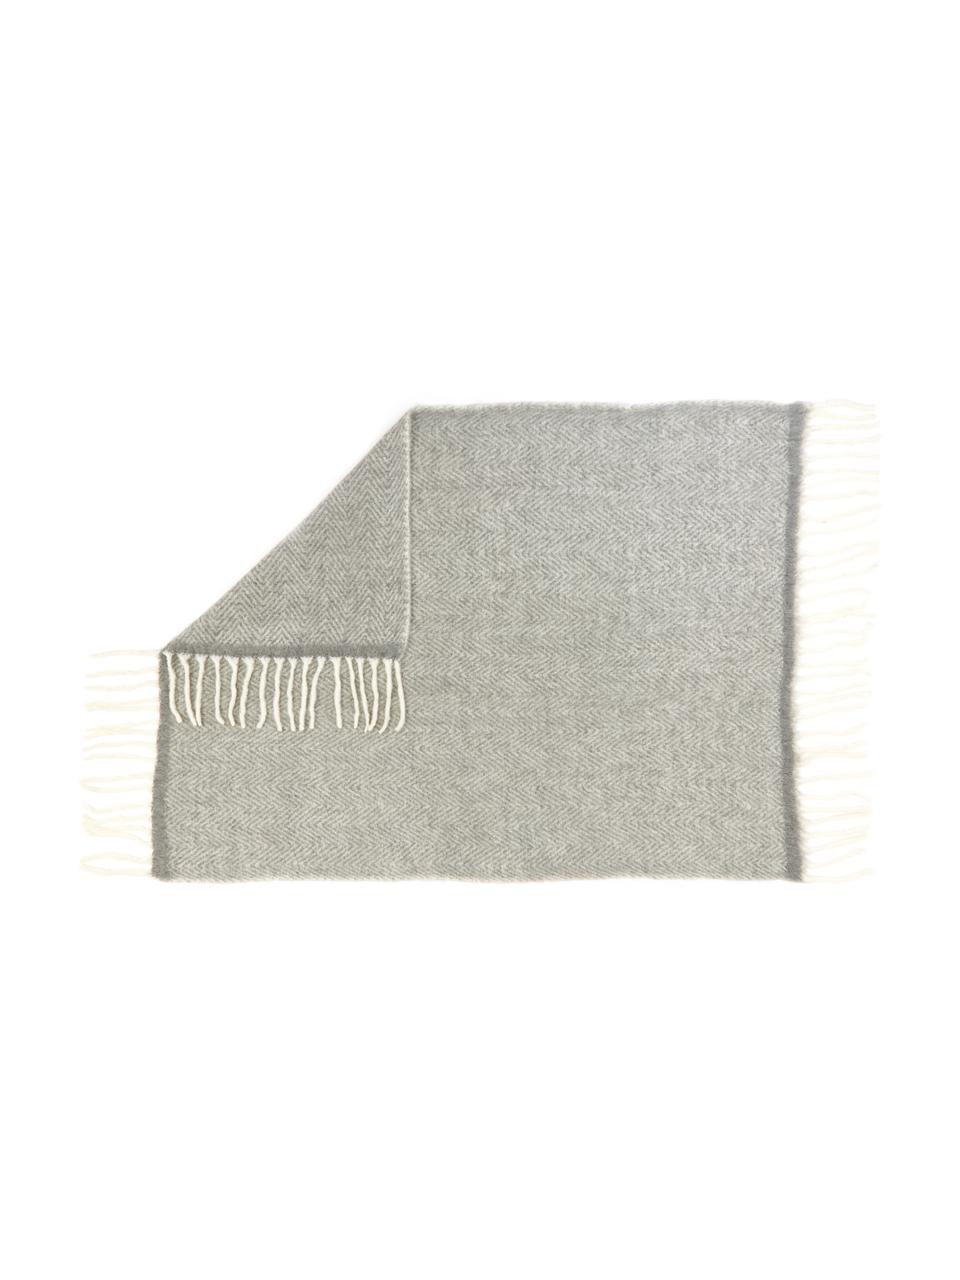 Plaid en laine Beatrice, 60 % laine, 25 % acrylique, 15 % nylon, Gris, larg. 170 x long. 120 cm